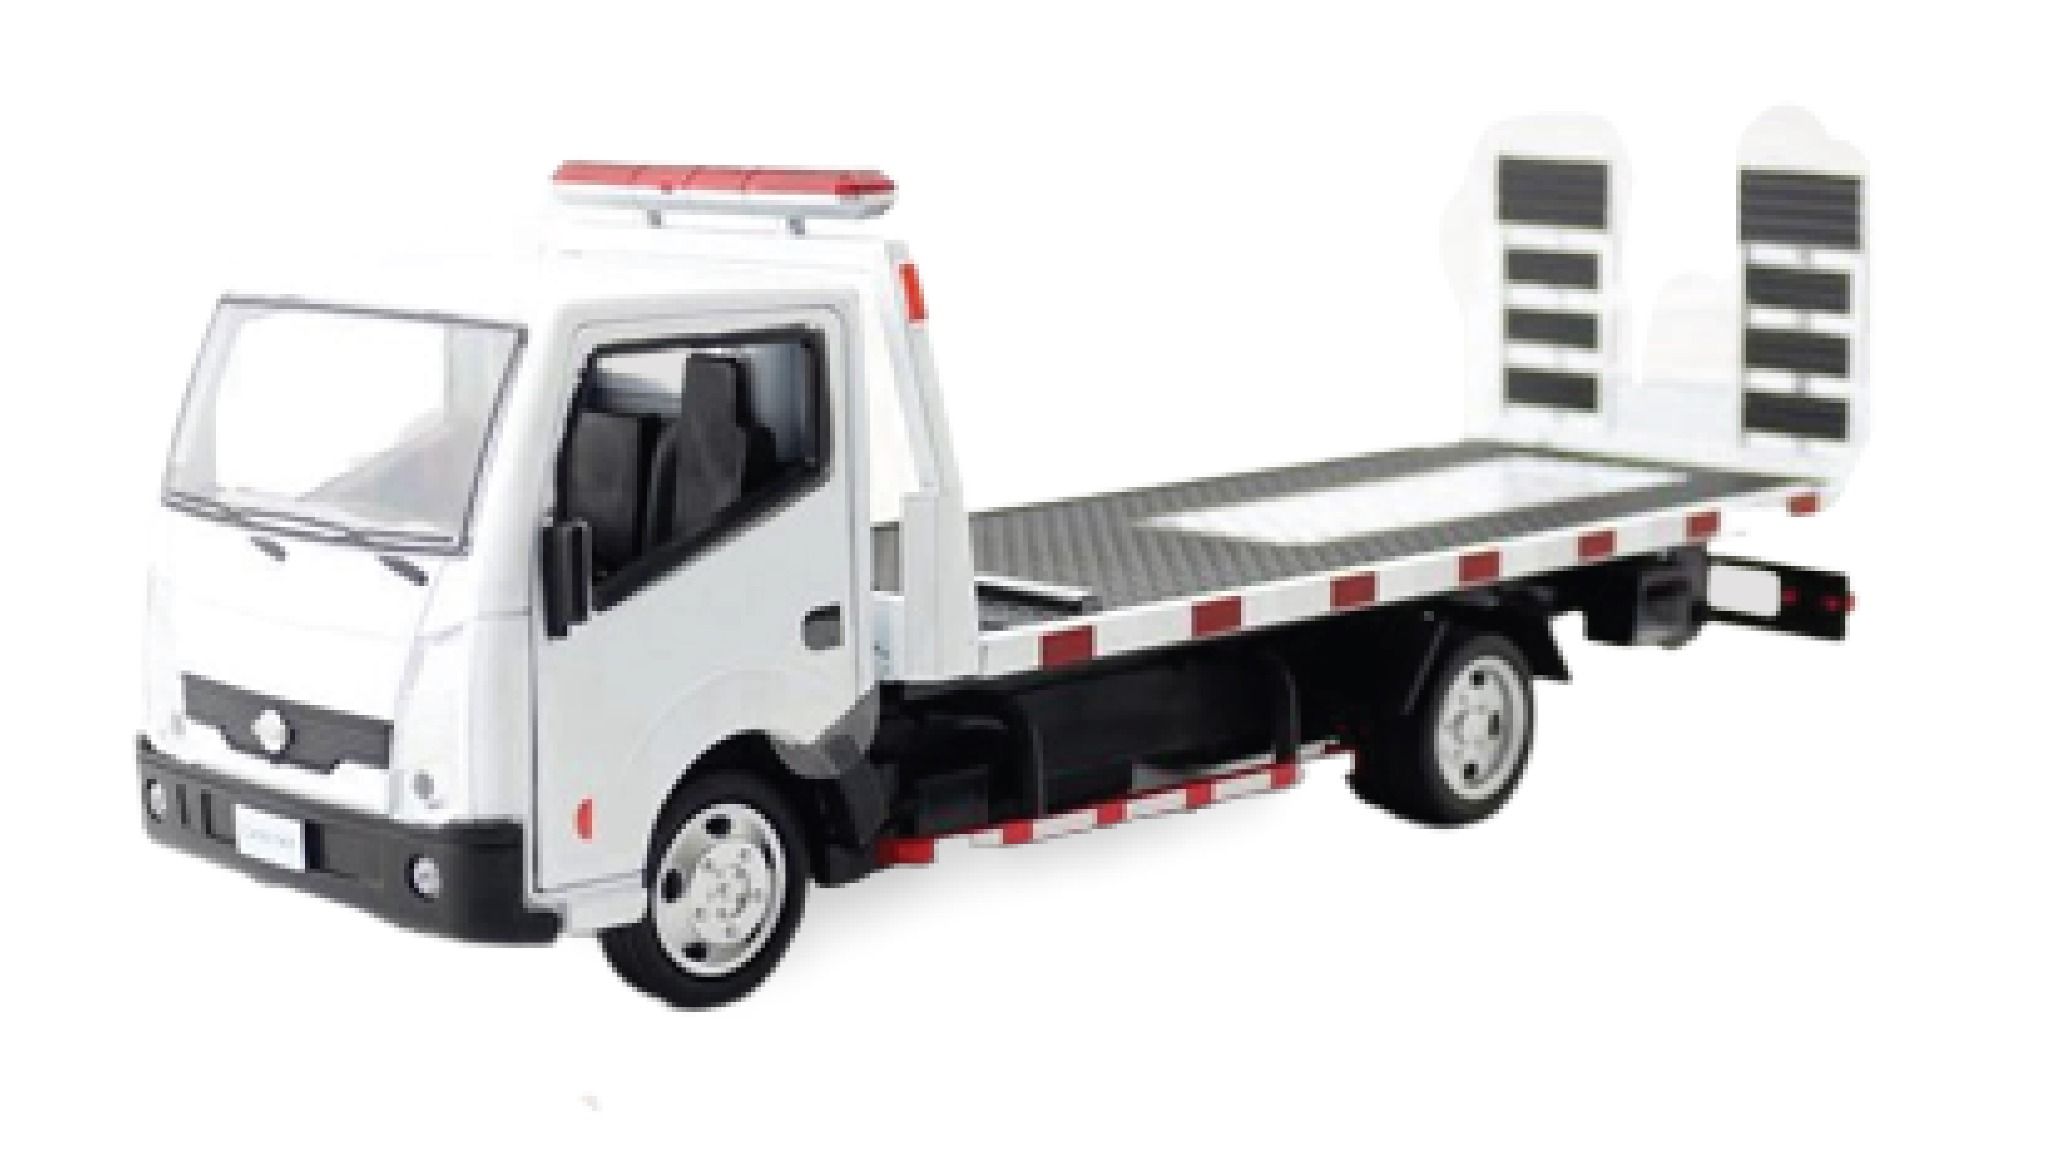  Xe mô hình tải cứu hộ nissan 1:32 truck model 8035 